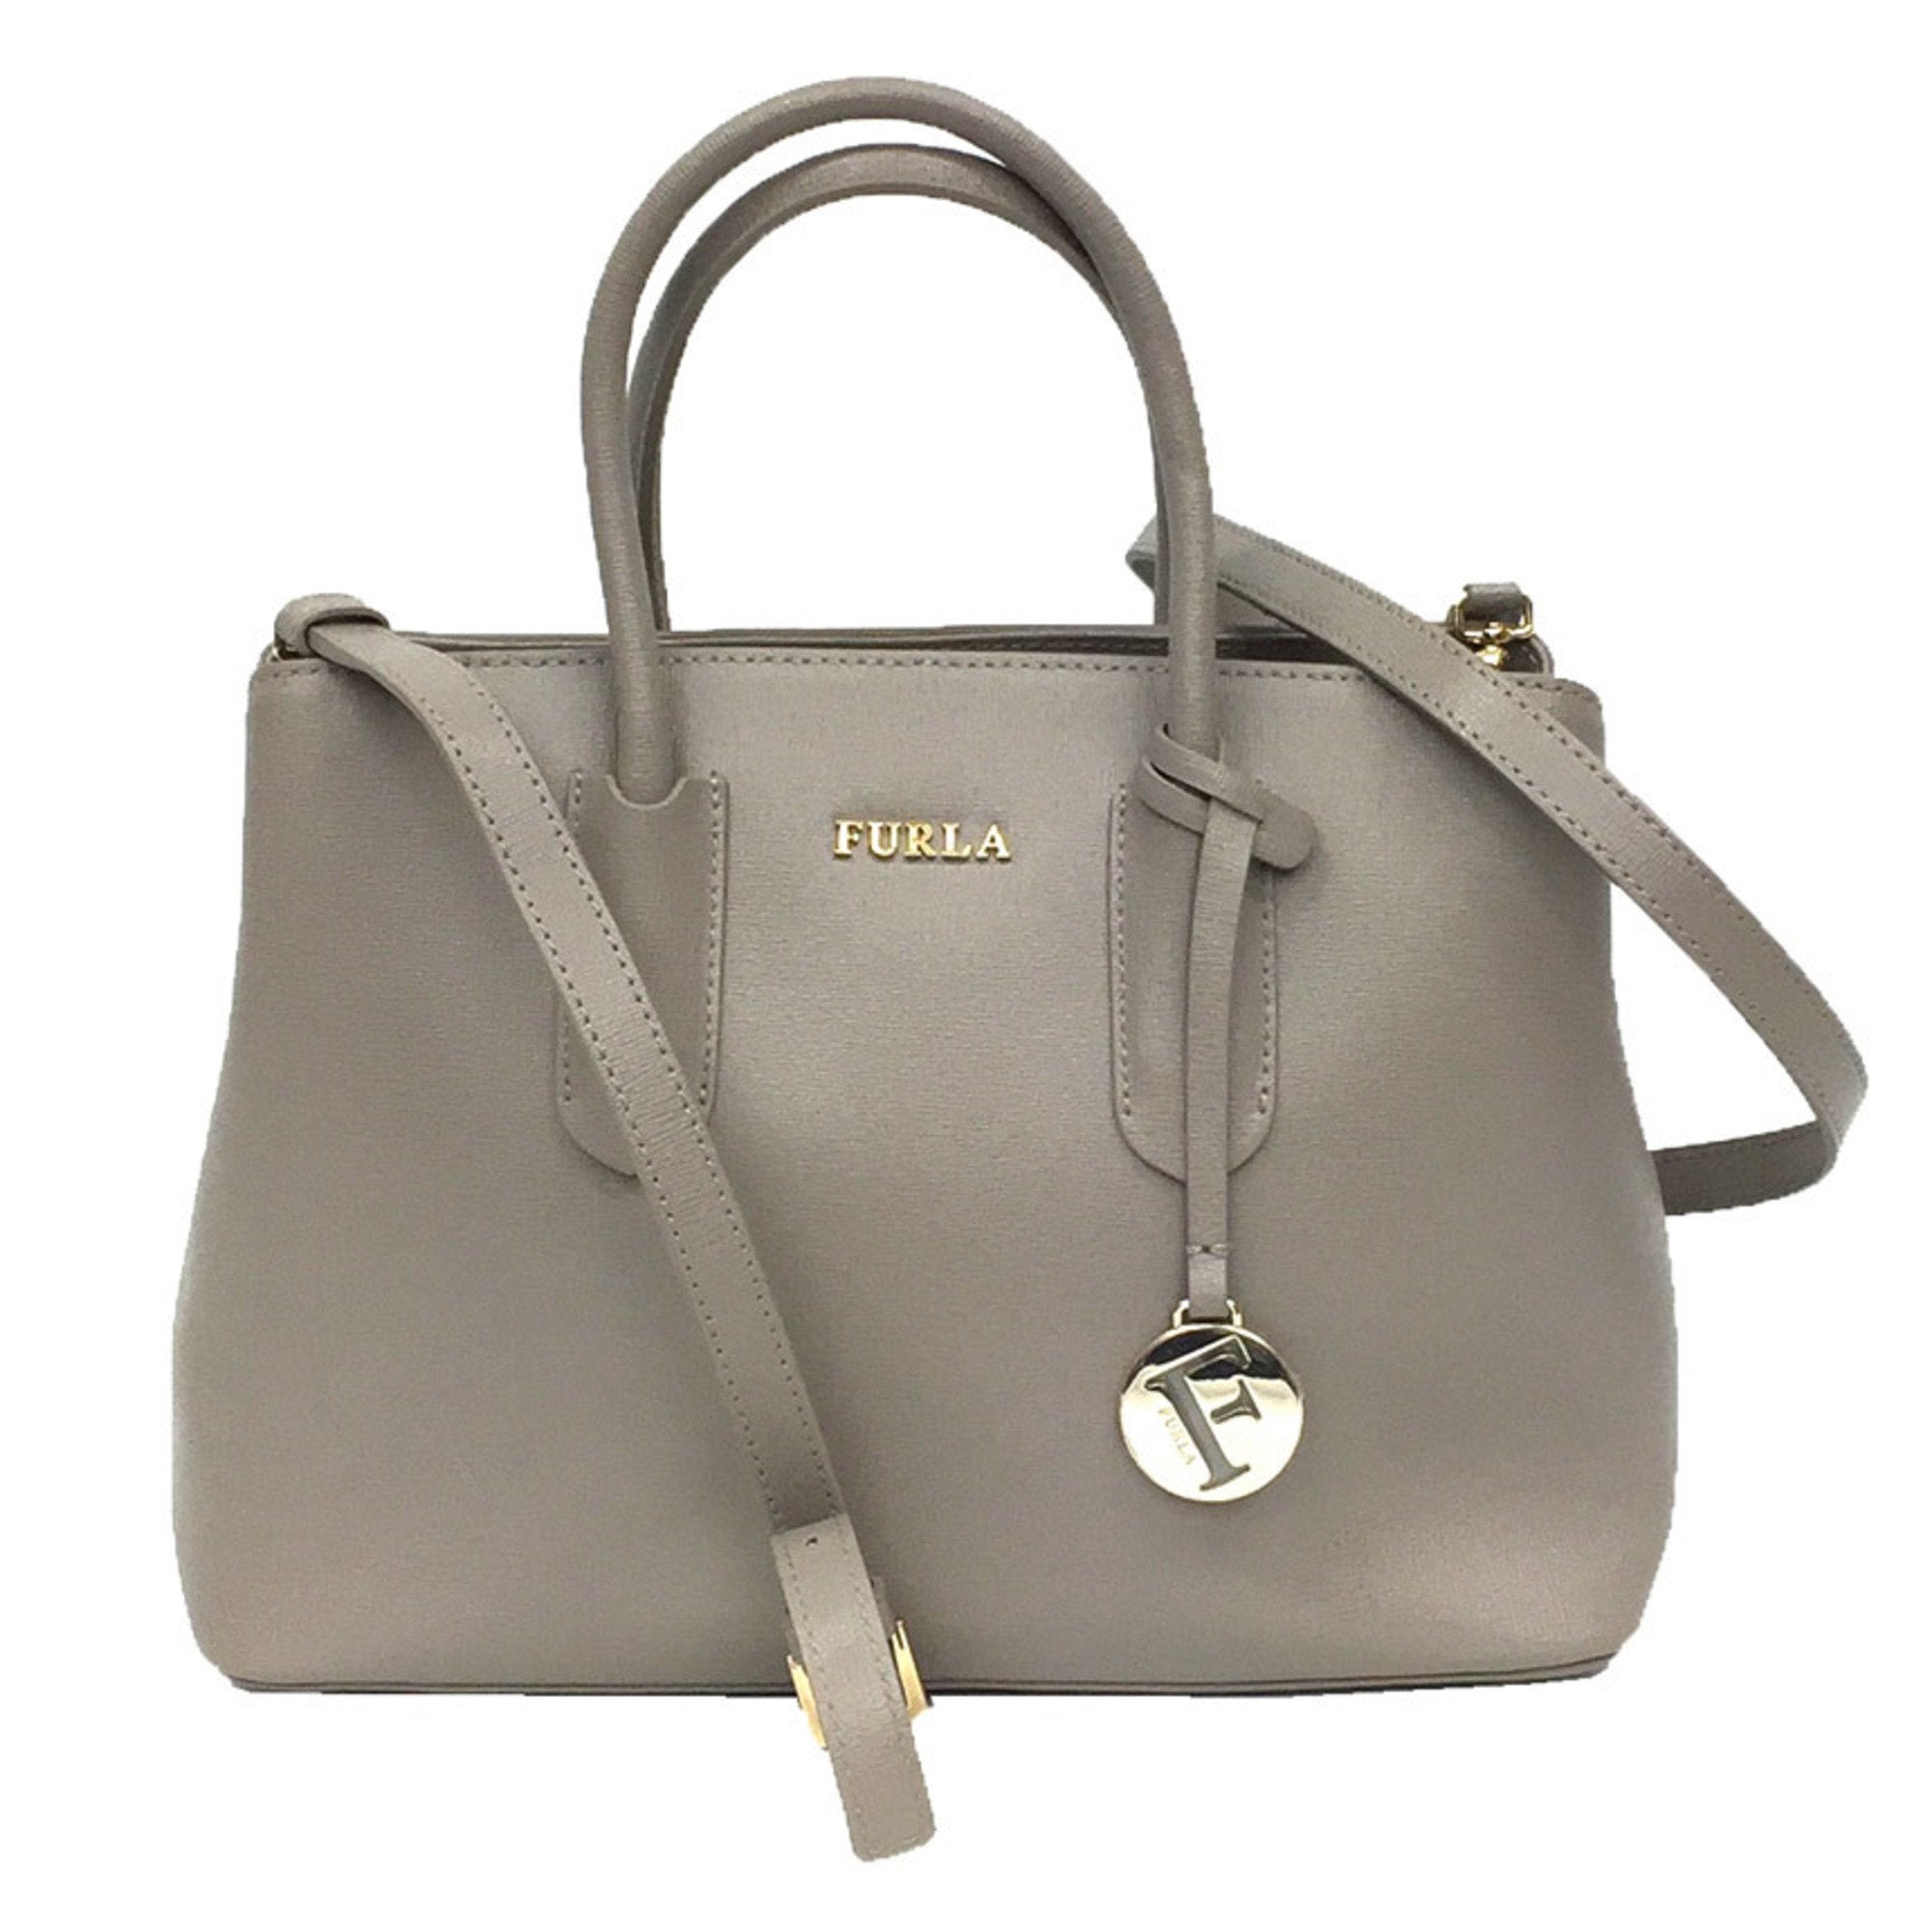 2WAY Tote Bag 937632 Handbag Shoulder Leather Grey